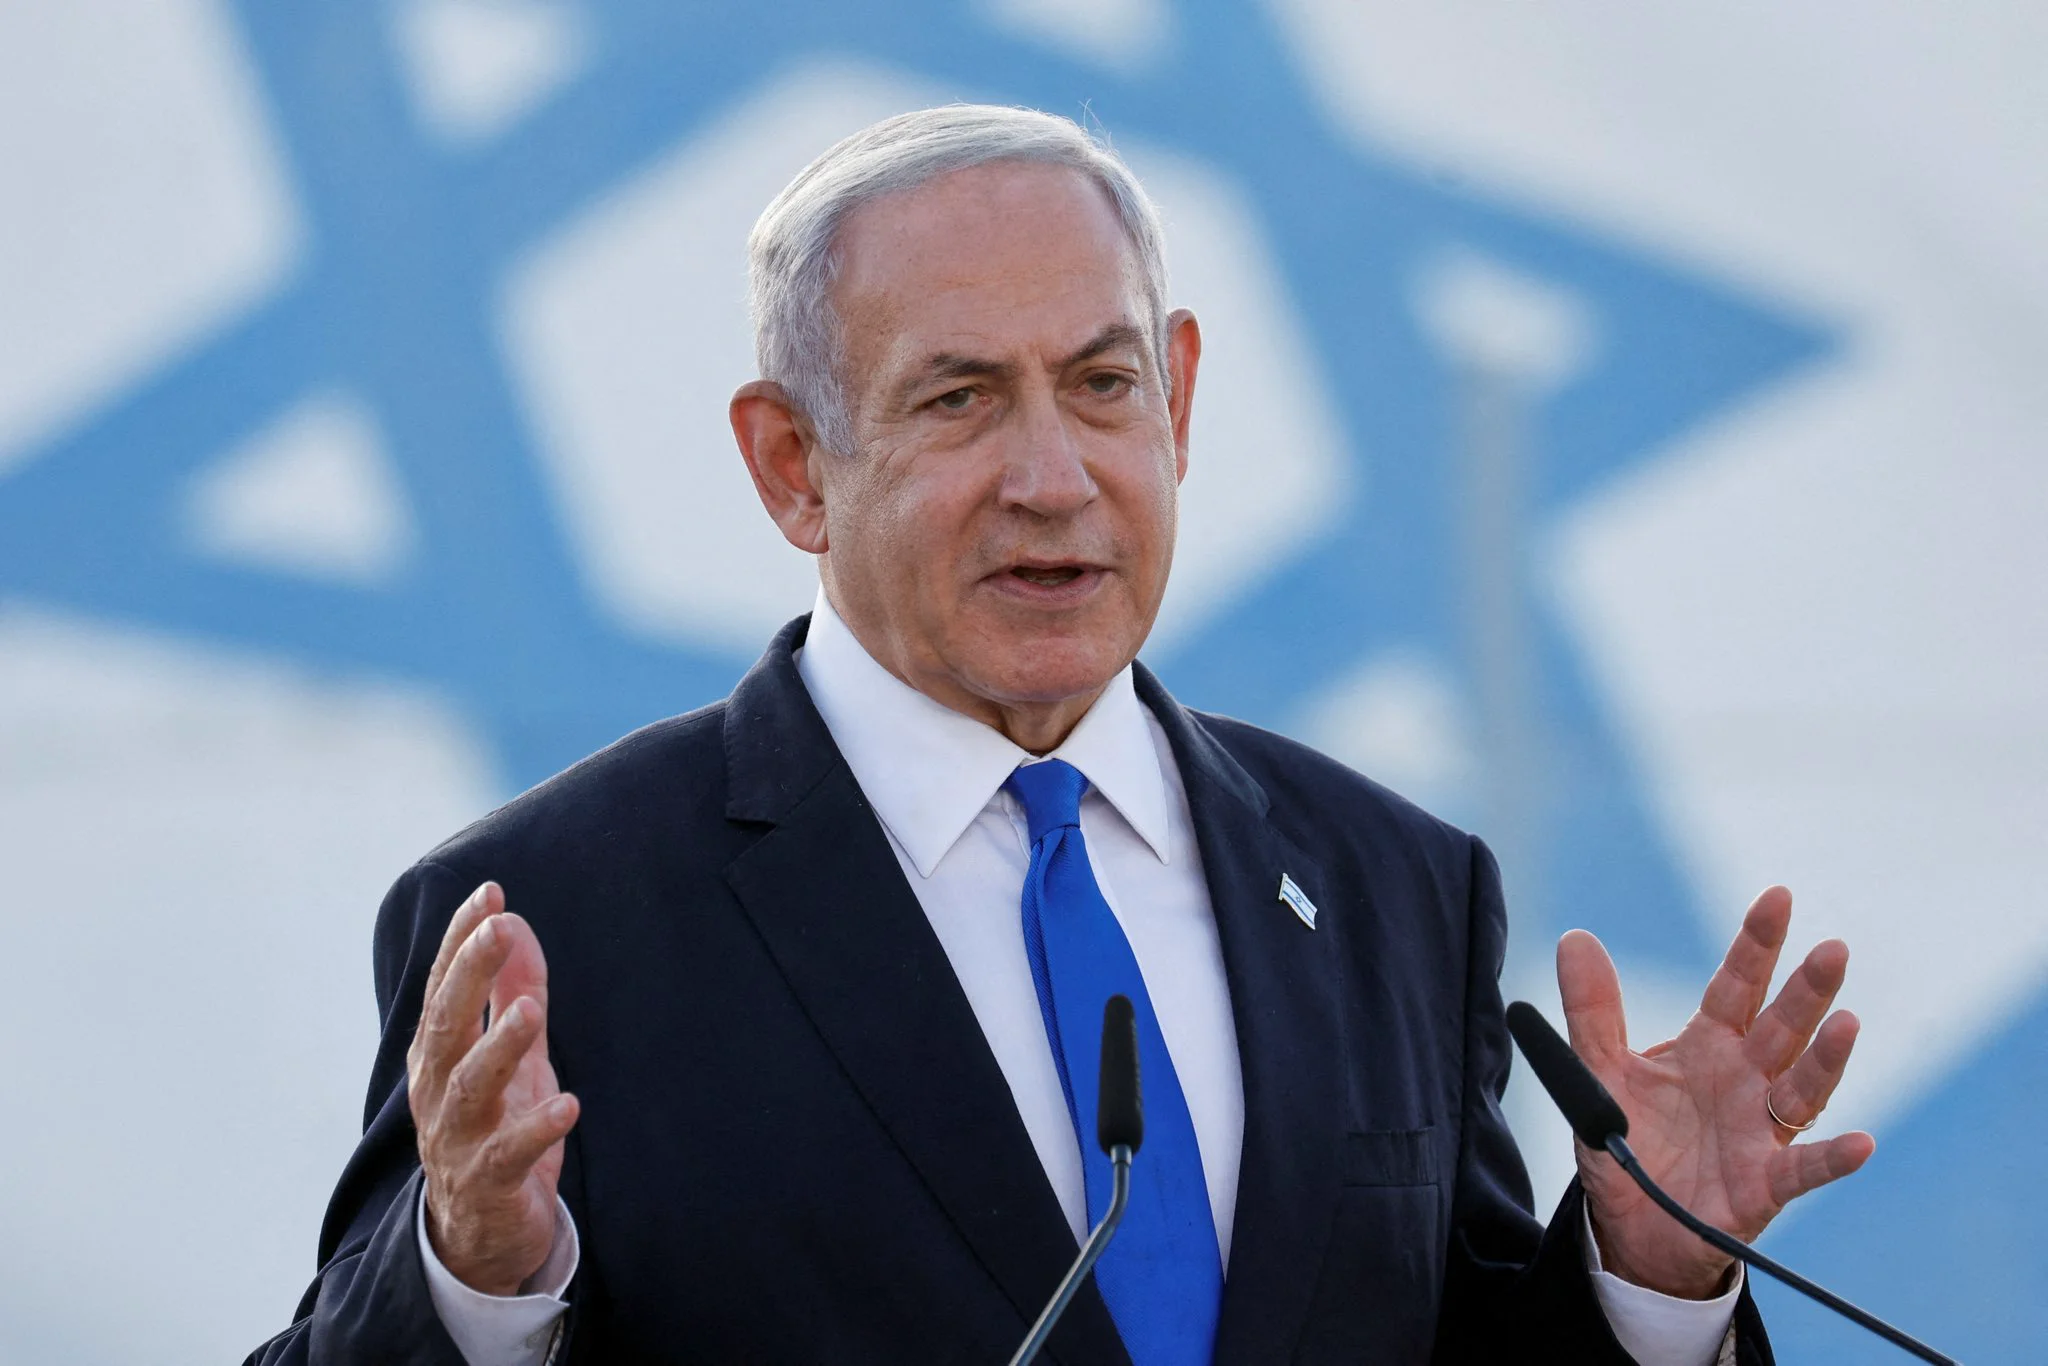 Război în Israel, ziua 145. Biden îl avertizează pe Netanyahu: Israelul riscă să piardă sprijinul internațional